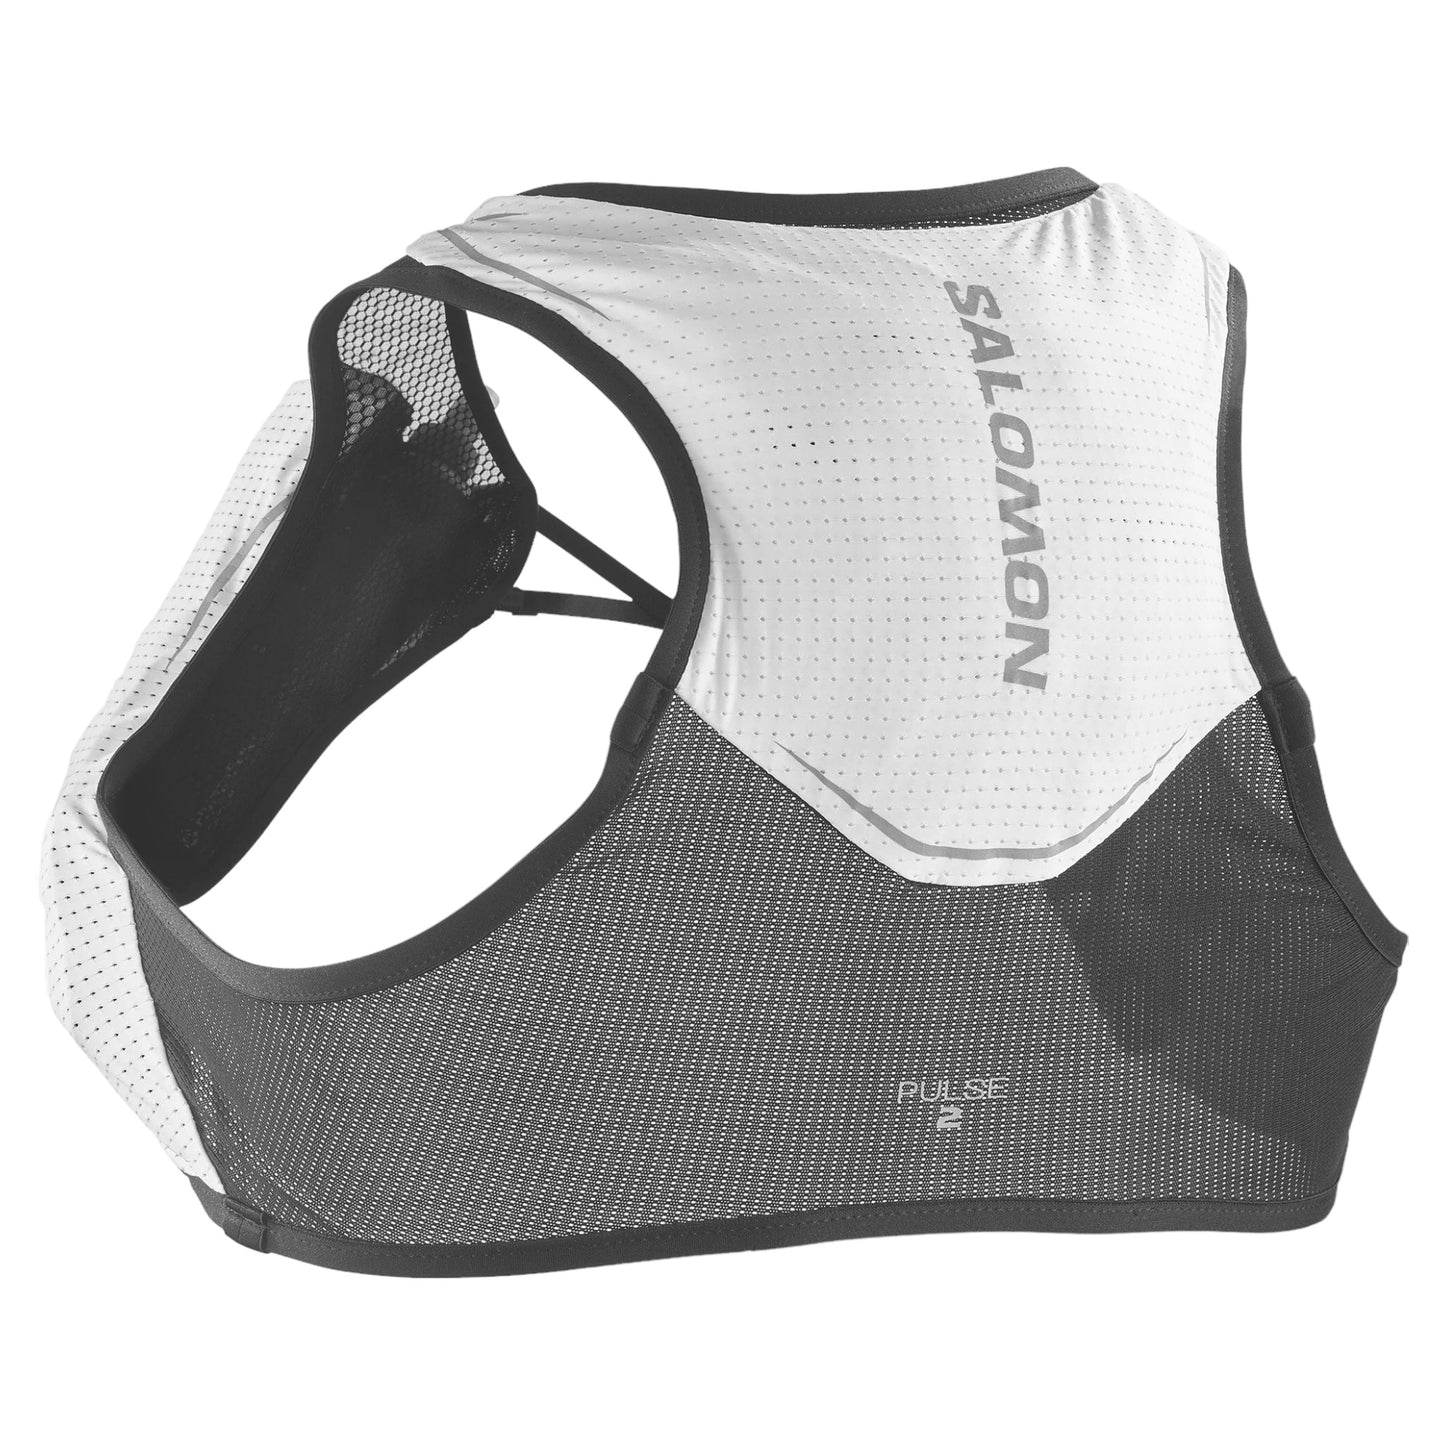 Salomon - Pulse 2 - white / black - unisex running vest